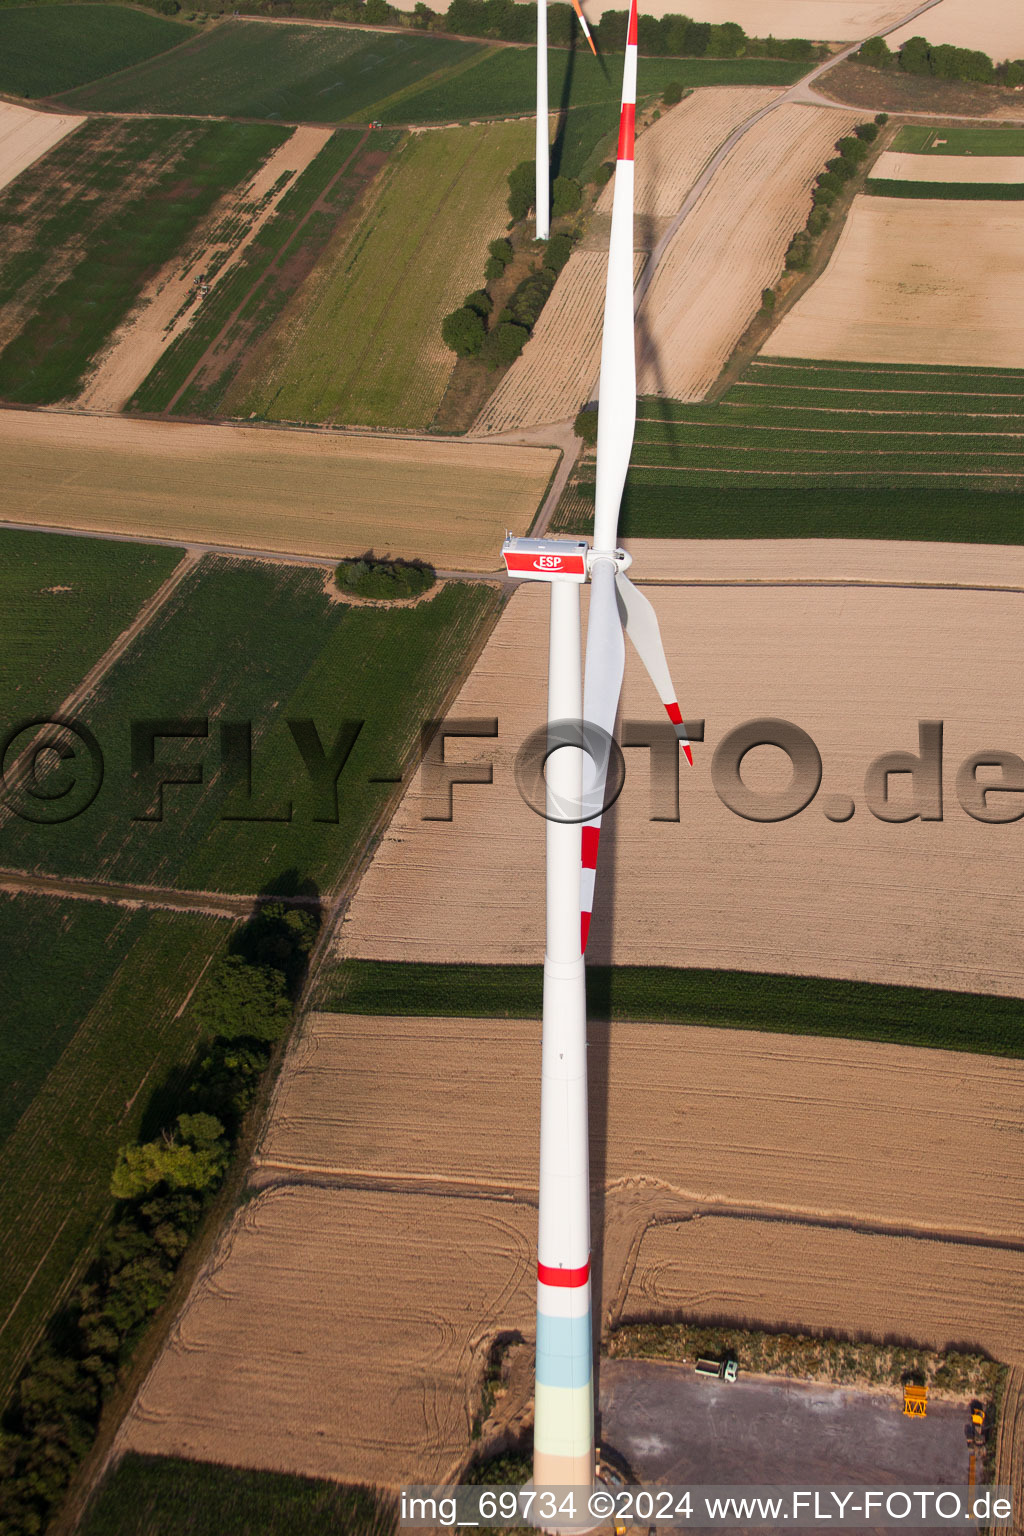 Windparkbau in Offenbach an der Queich im Bundesland Rheinland-Pfalz, Deutschland aus der Drohnenperspektive